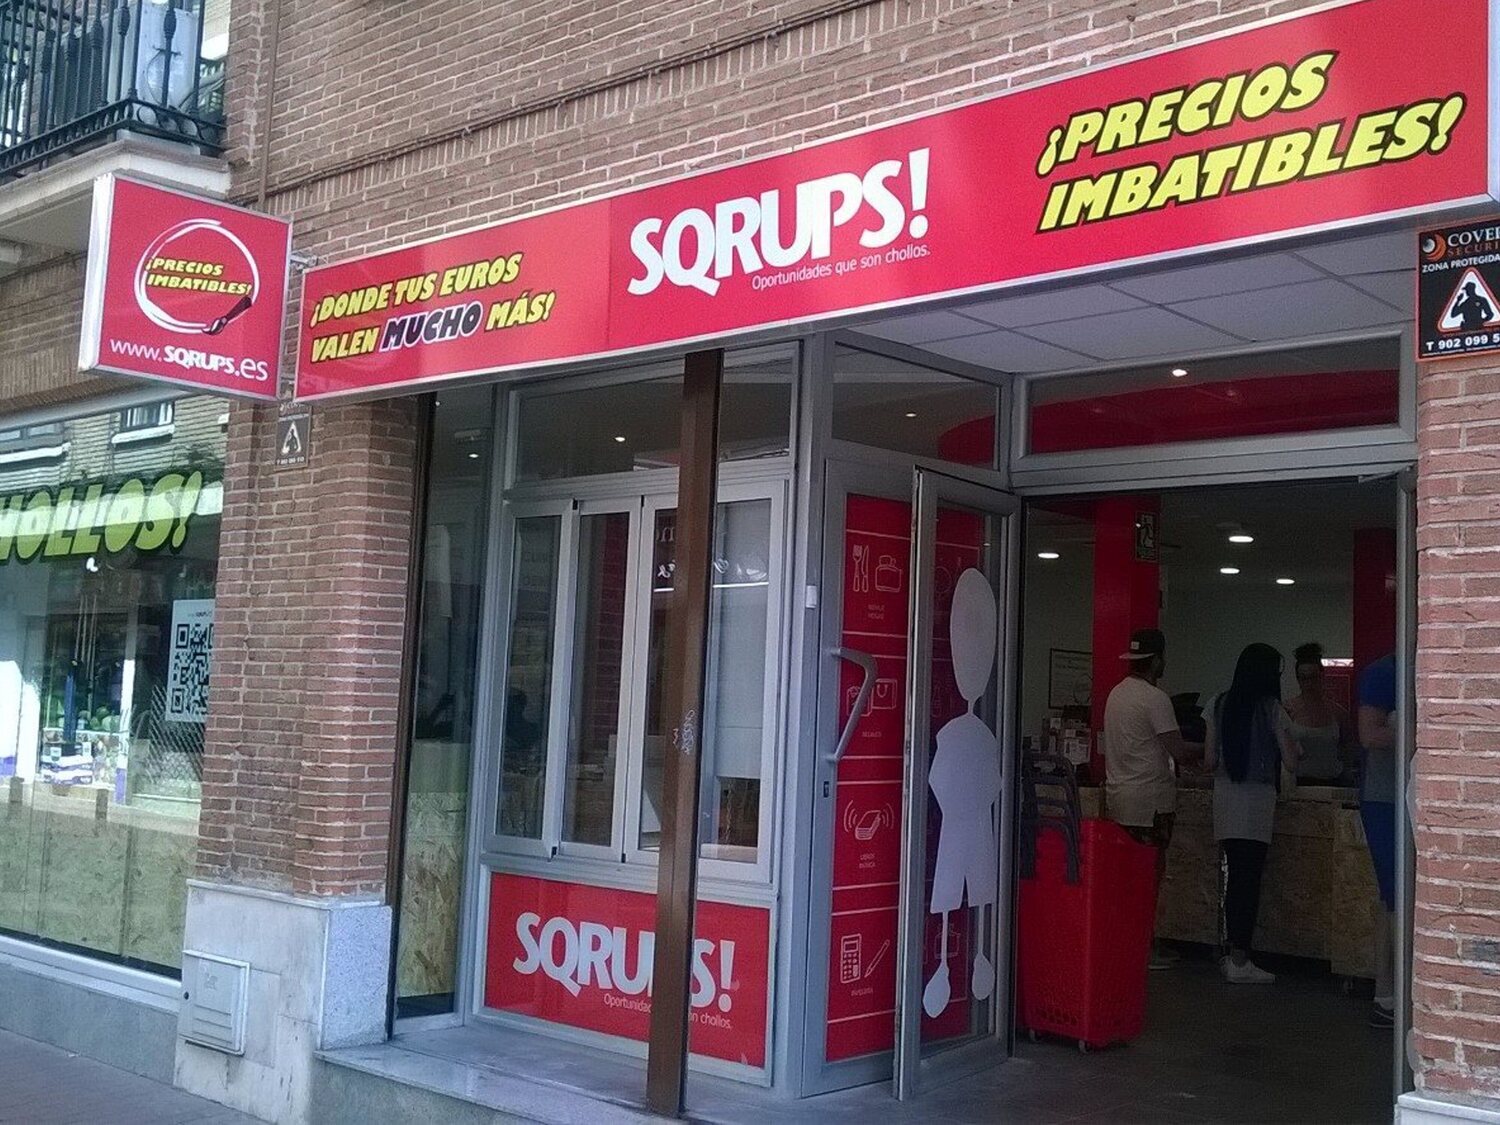 La cadena Sqrups! refuerza su expansión en España y prepara la apertura de tiendas en estos puntos